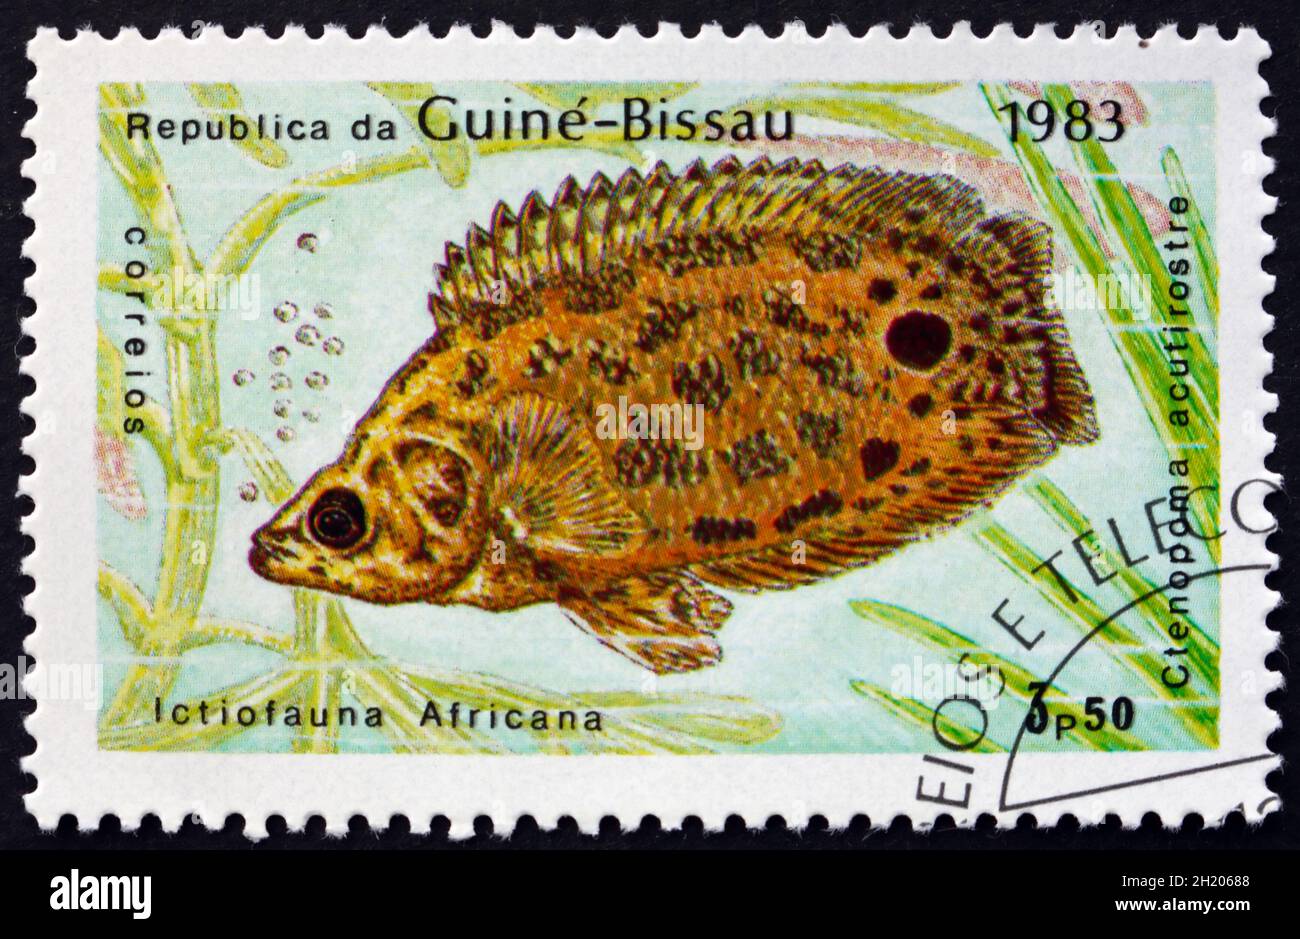 GUINEA-BISSAU - CIRCA 1983: a stamp printed in Guinea-Bissau shows Leopard Bush Fish, Ctenopoma Acutirostre, Freshwater Fish, circa 1983 Stock Photo